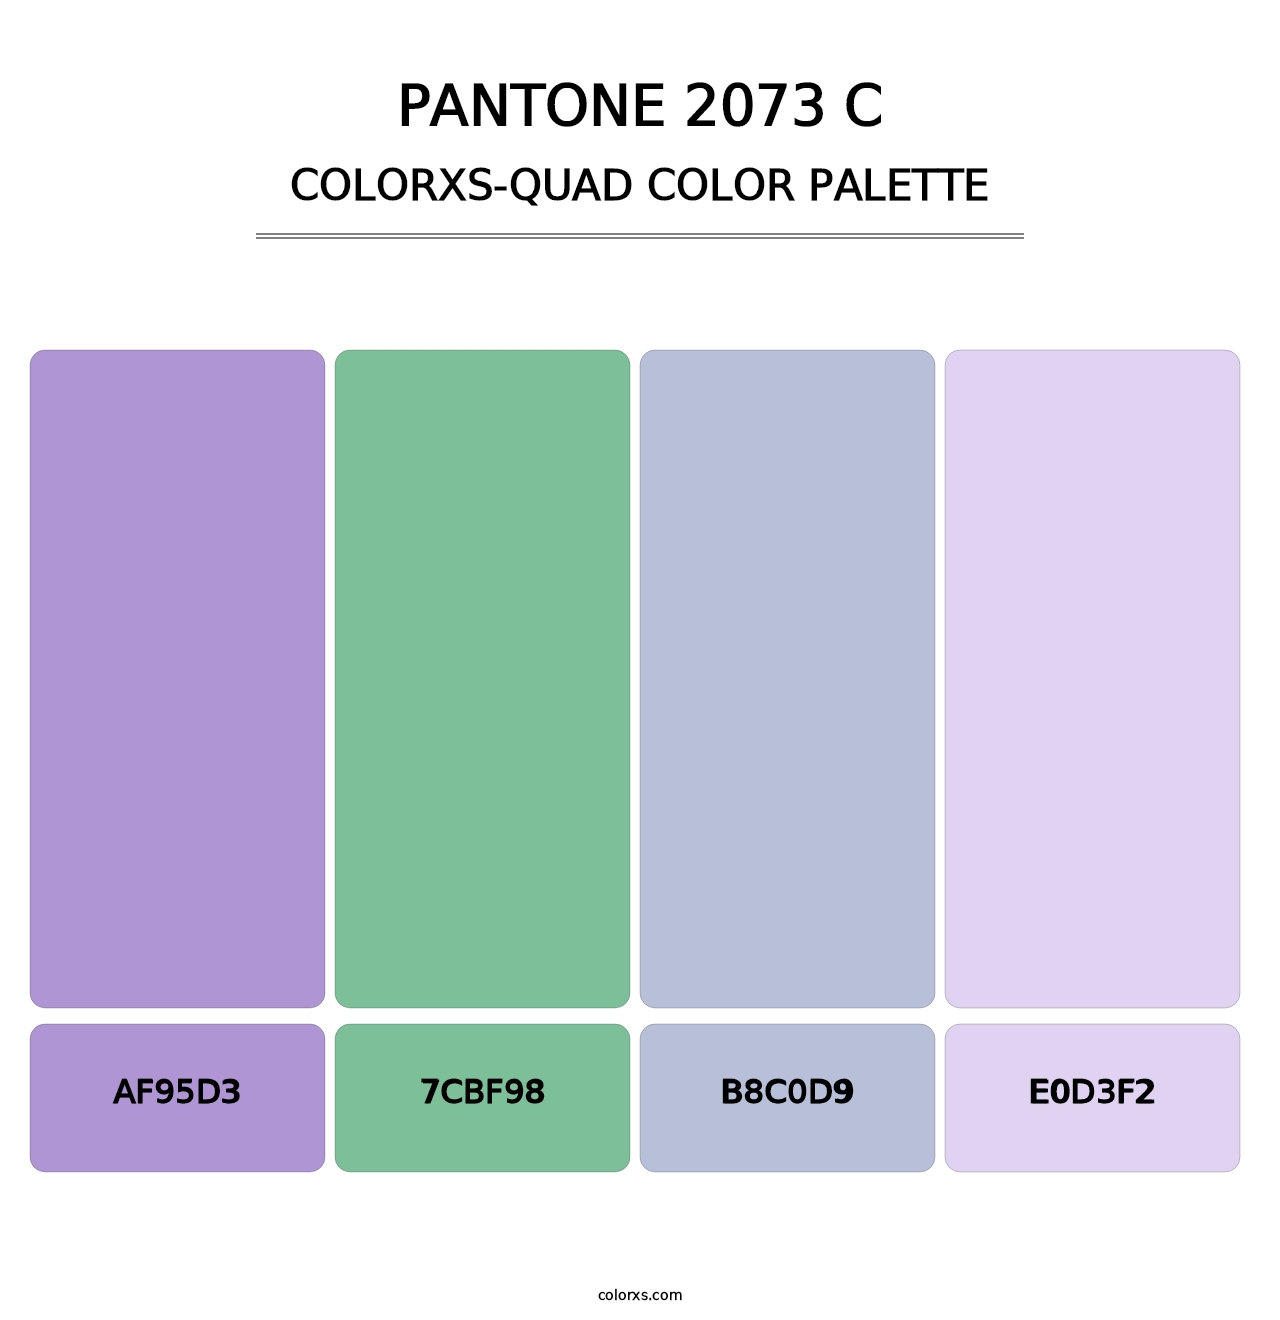 PANTONE 2073 C - Colorxs Quad Palette